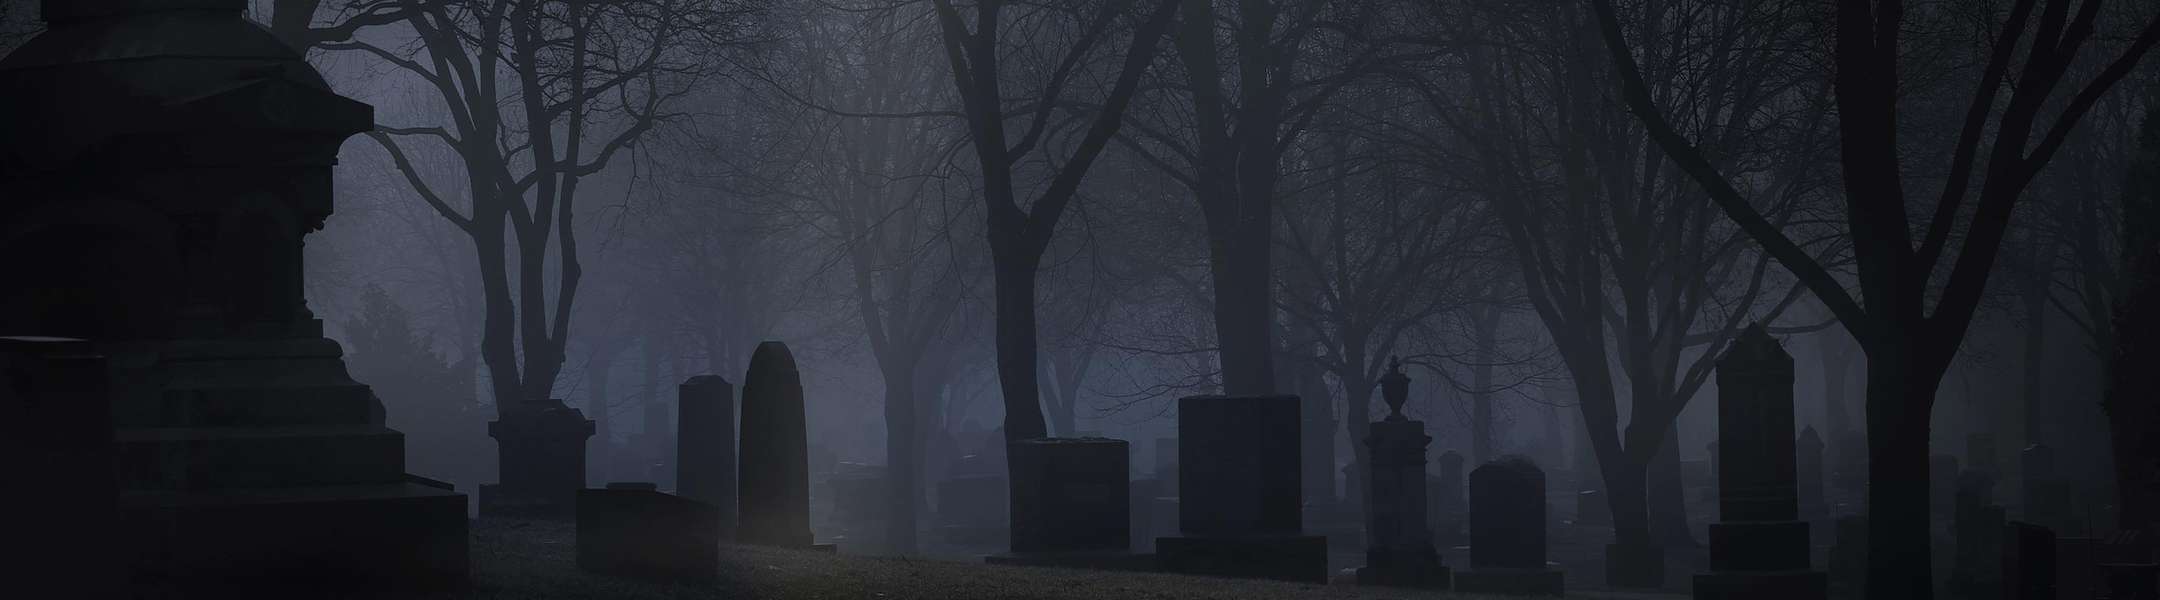 Uno de los cementerio embrujados que visitamos durante nuestros tours de fantasmas